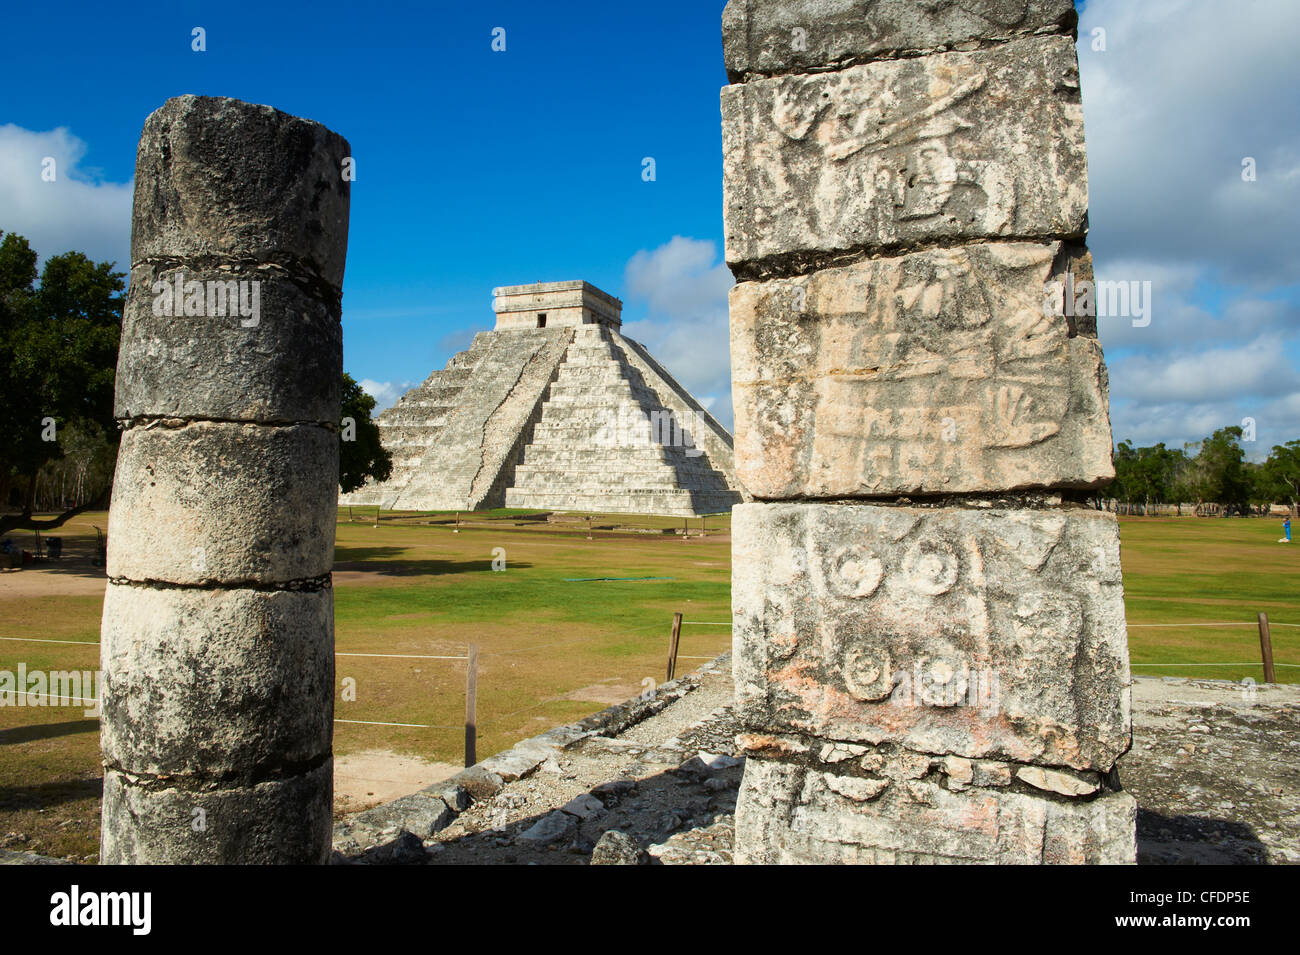 El Castillo piramide (Tempio di Kukulcan) nelle antiche rovine Maya di Chichen Itza, Sito Patrimonio Mondiale dell'UNESCO, Yucatan, Messico Foto Stock